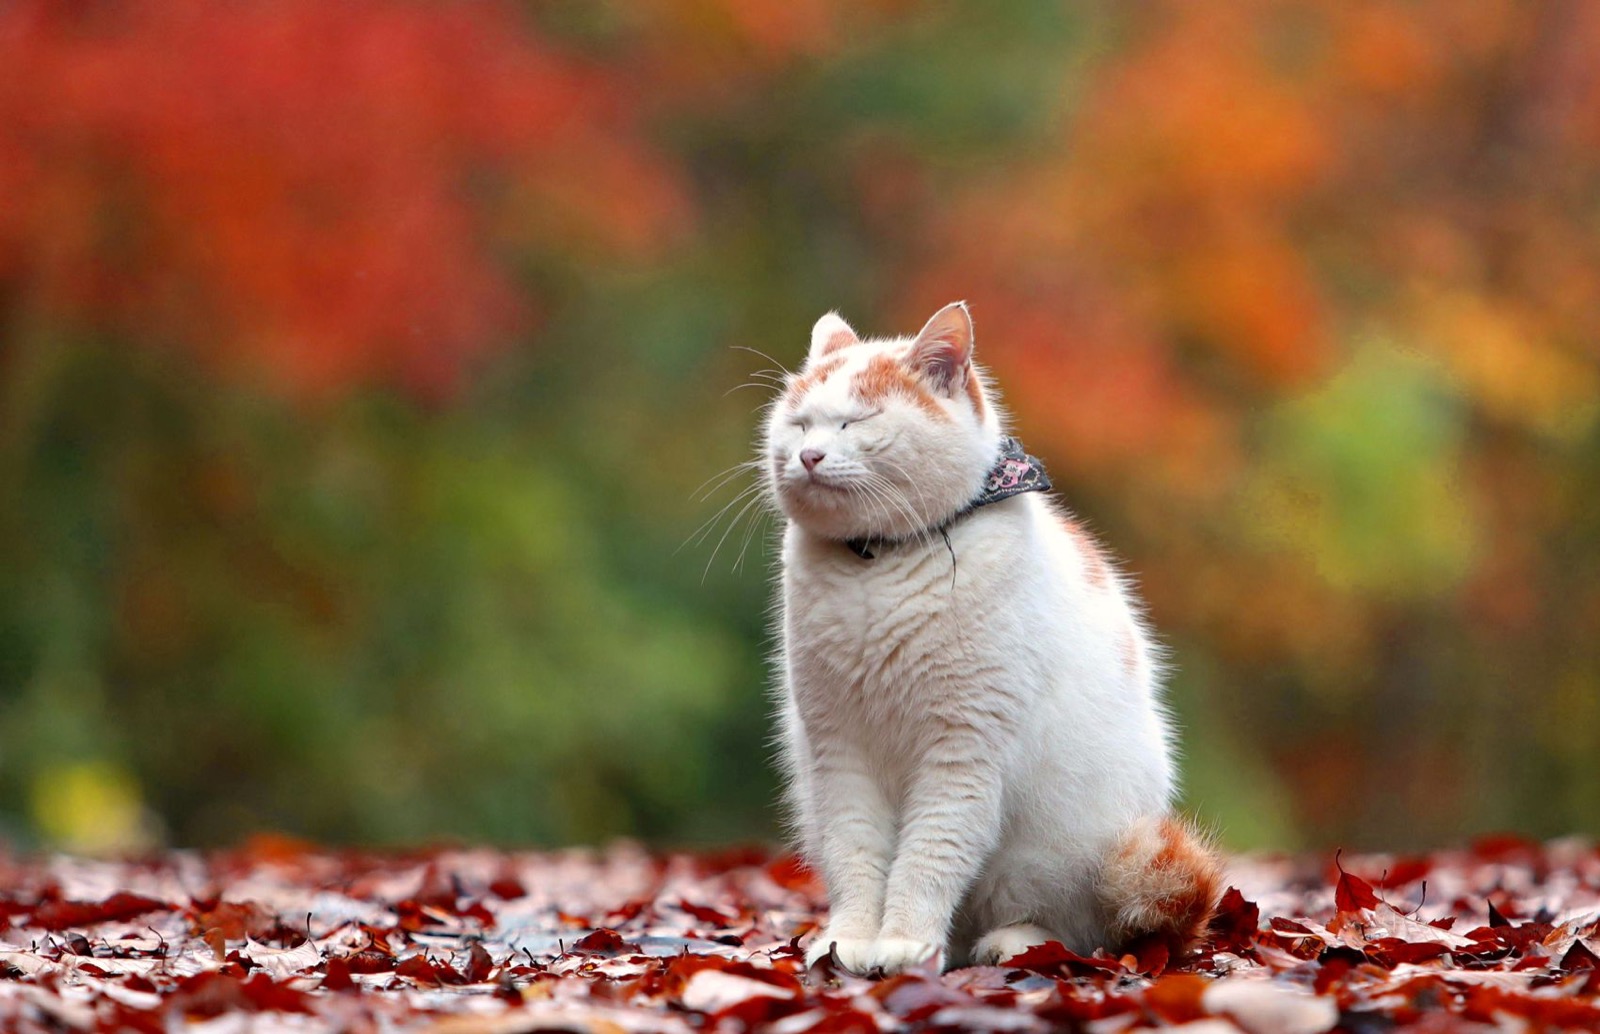 Cat in autumn season